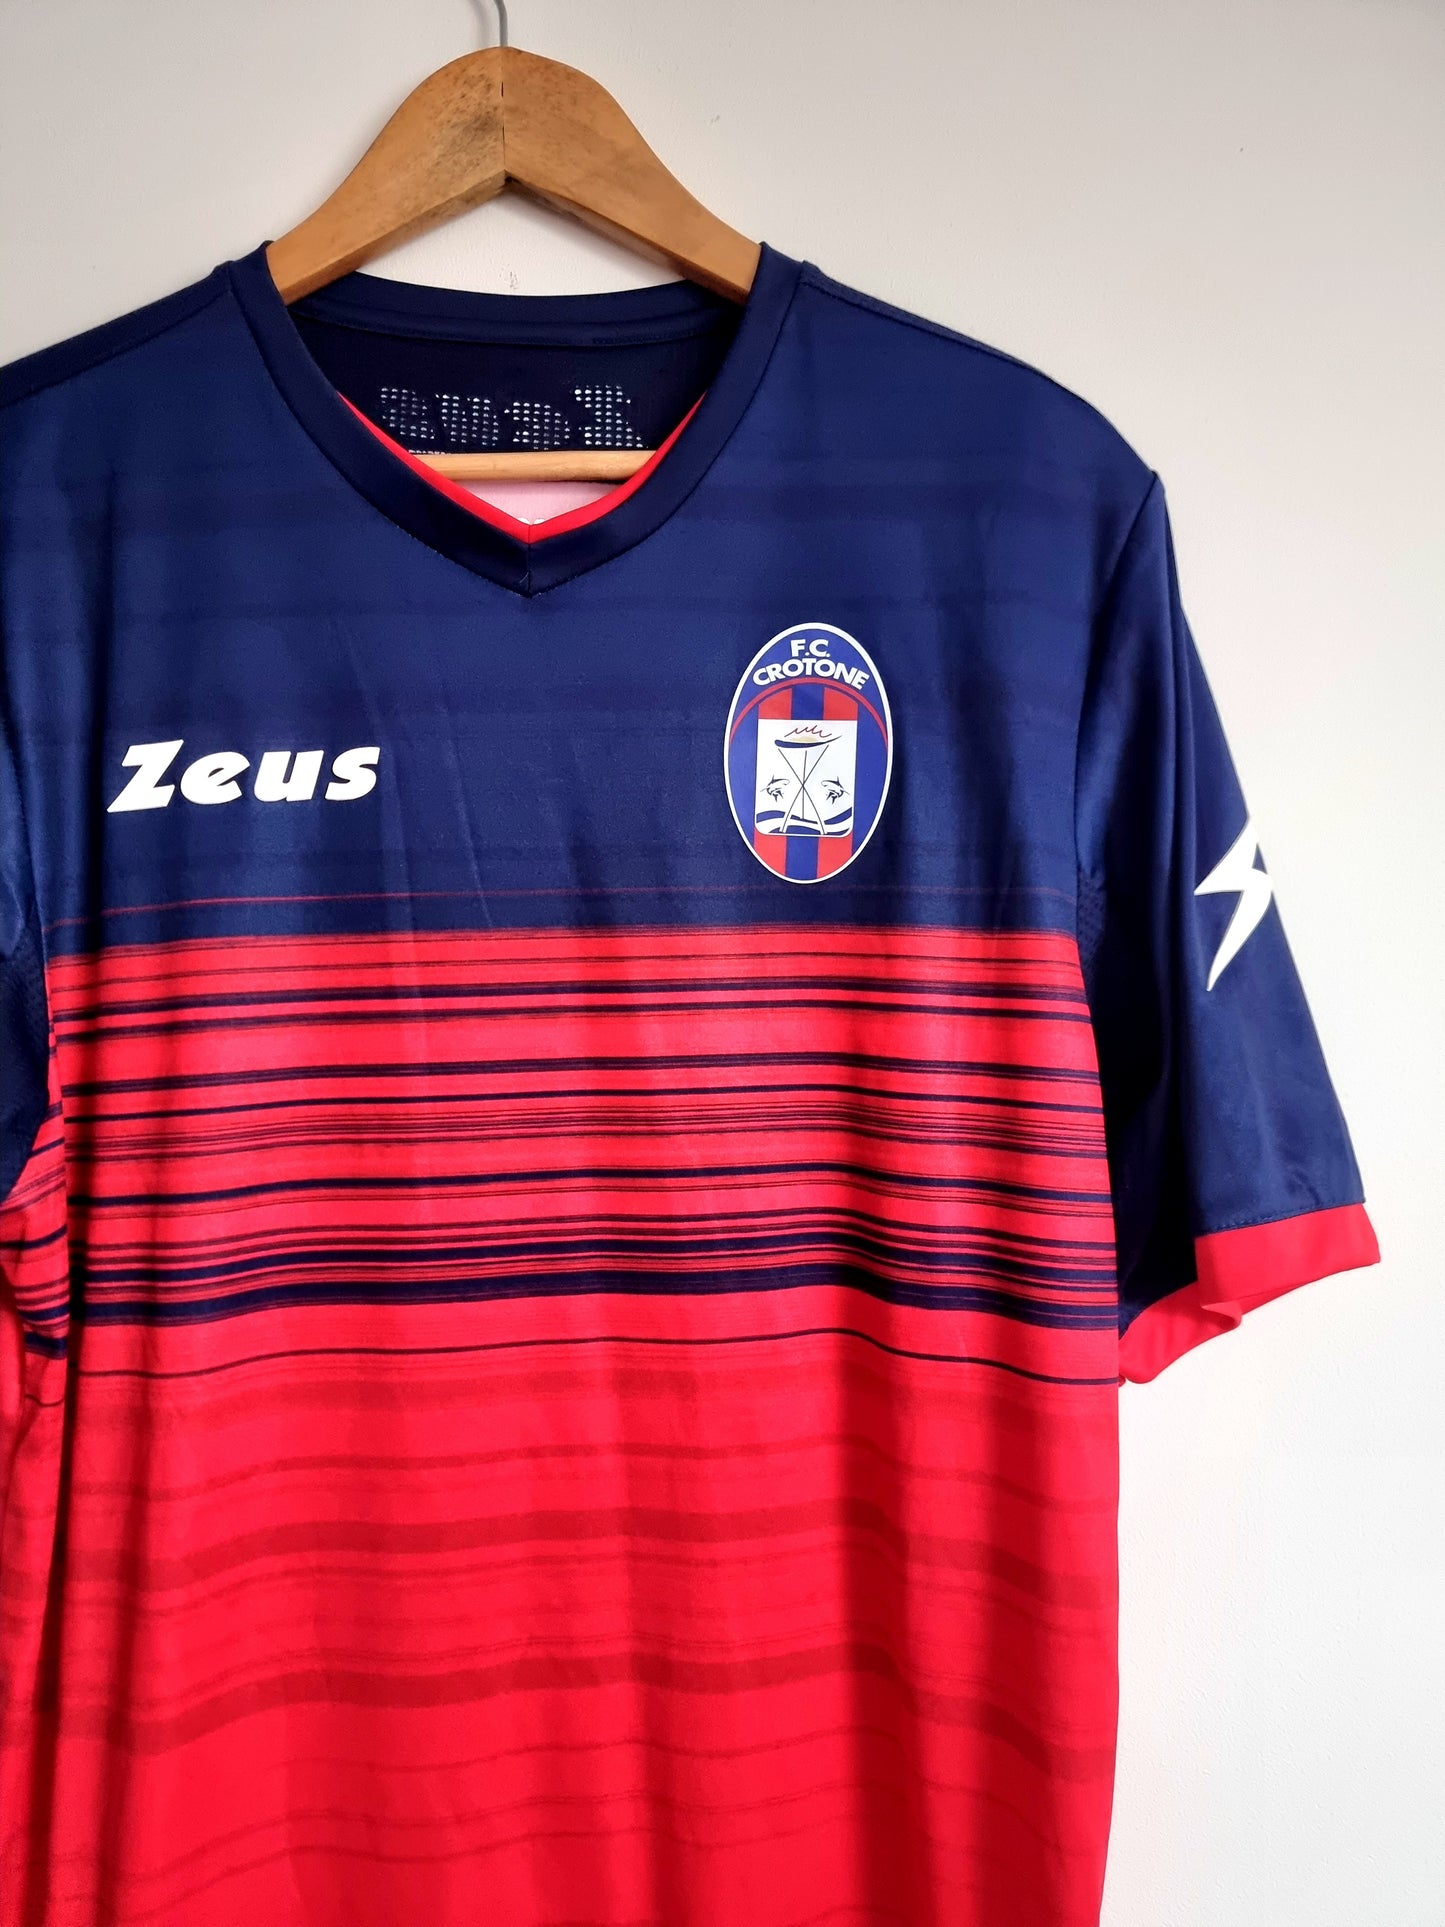 Zeus FC Crotone Training / Home Shirt XL